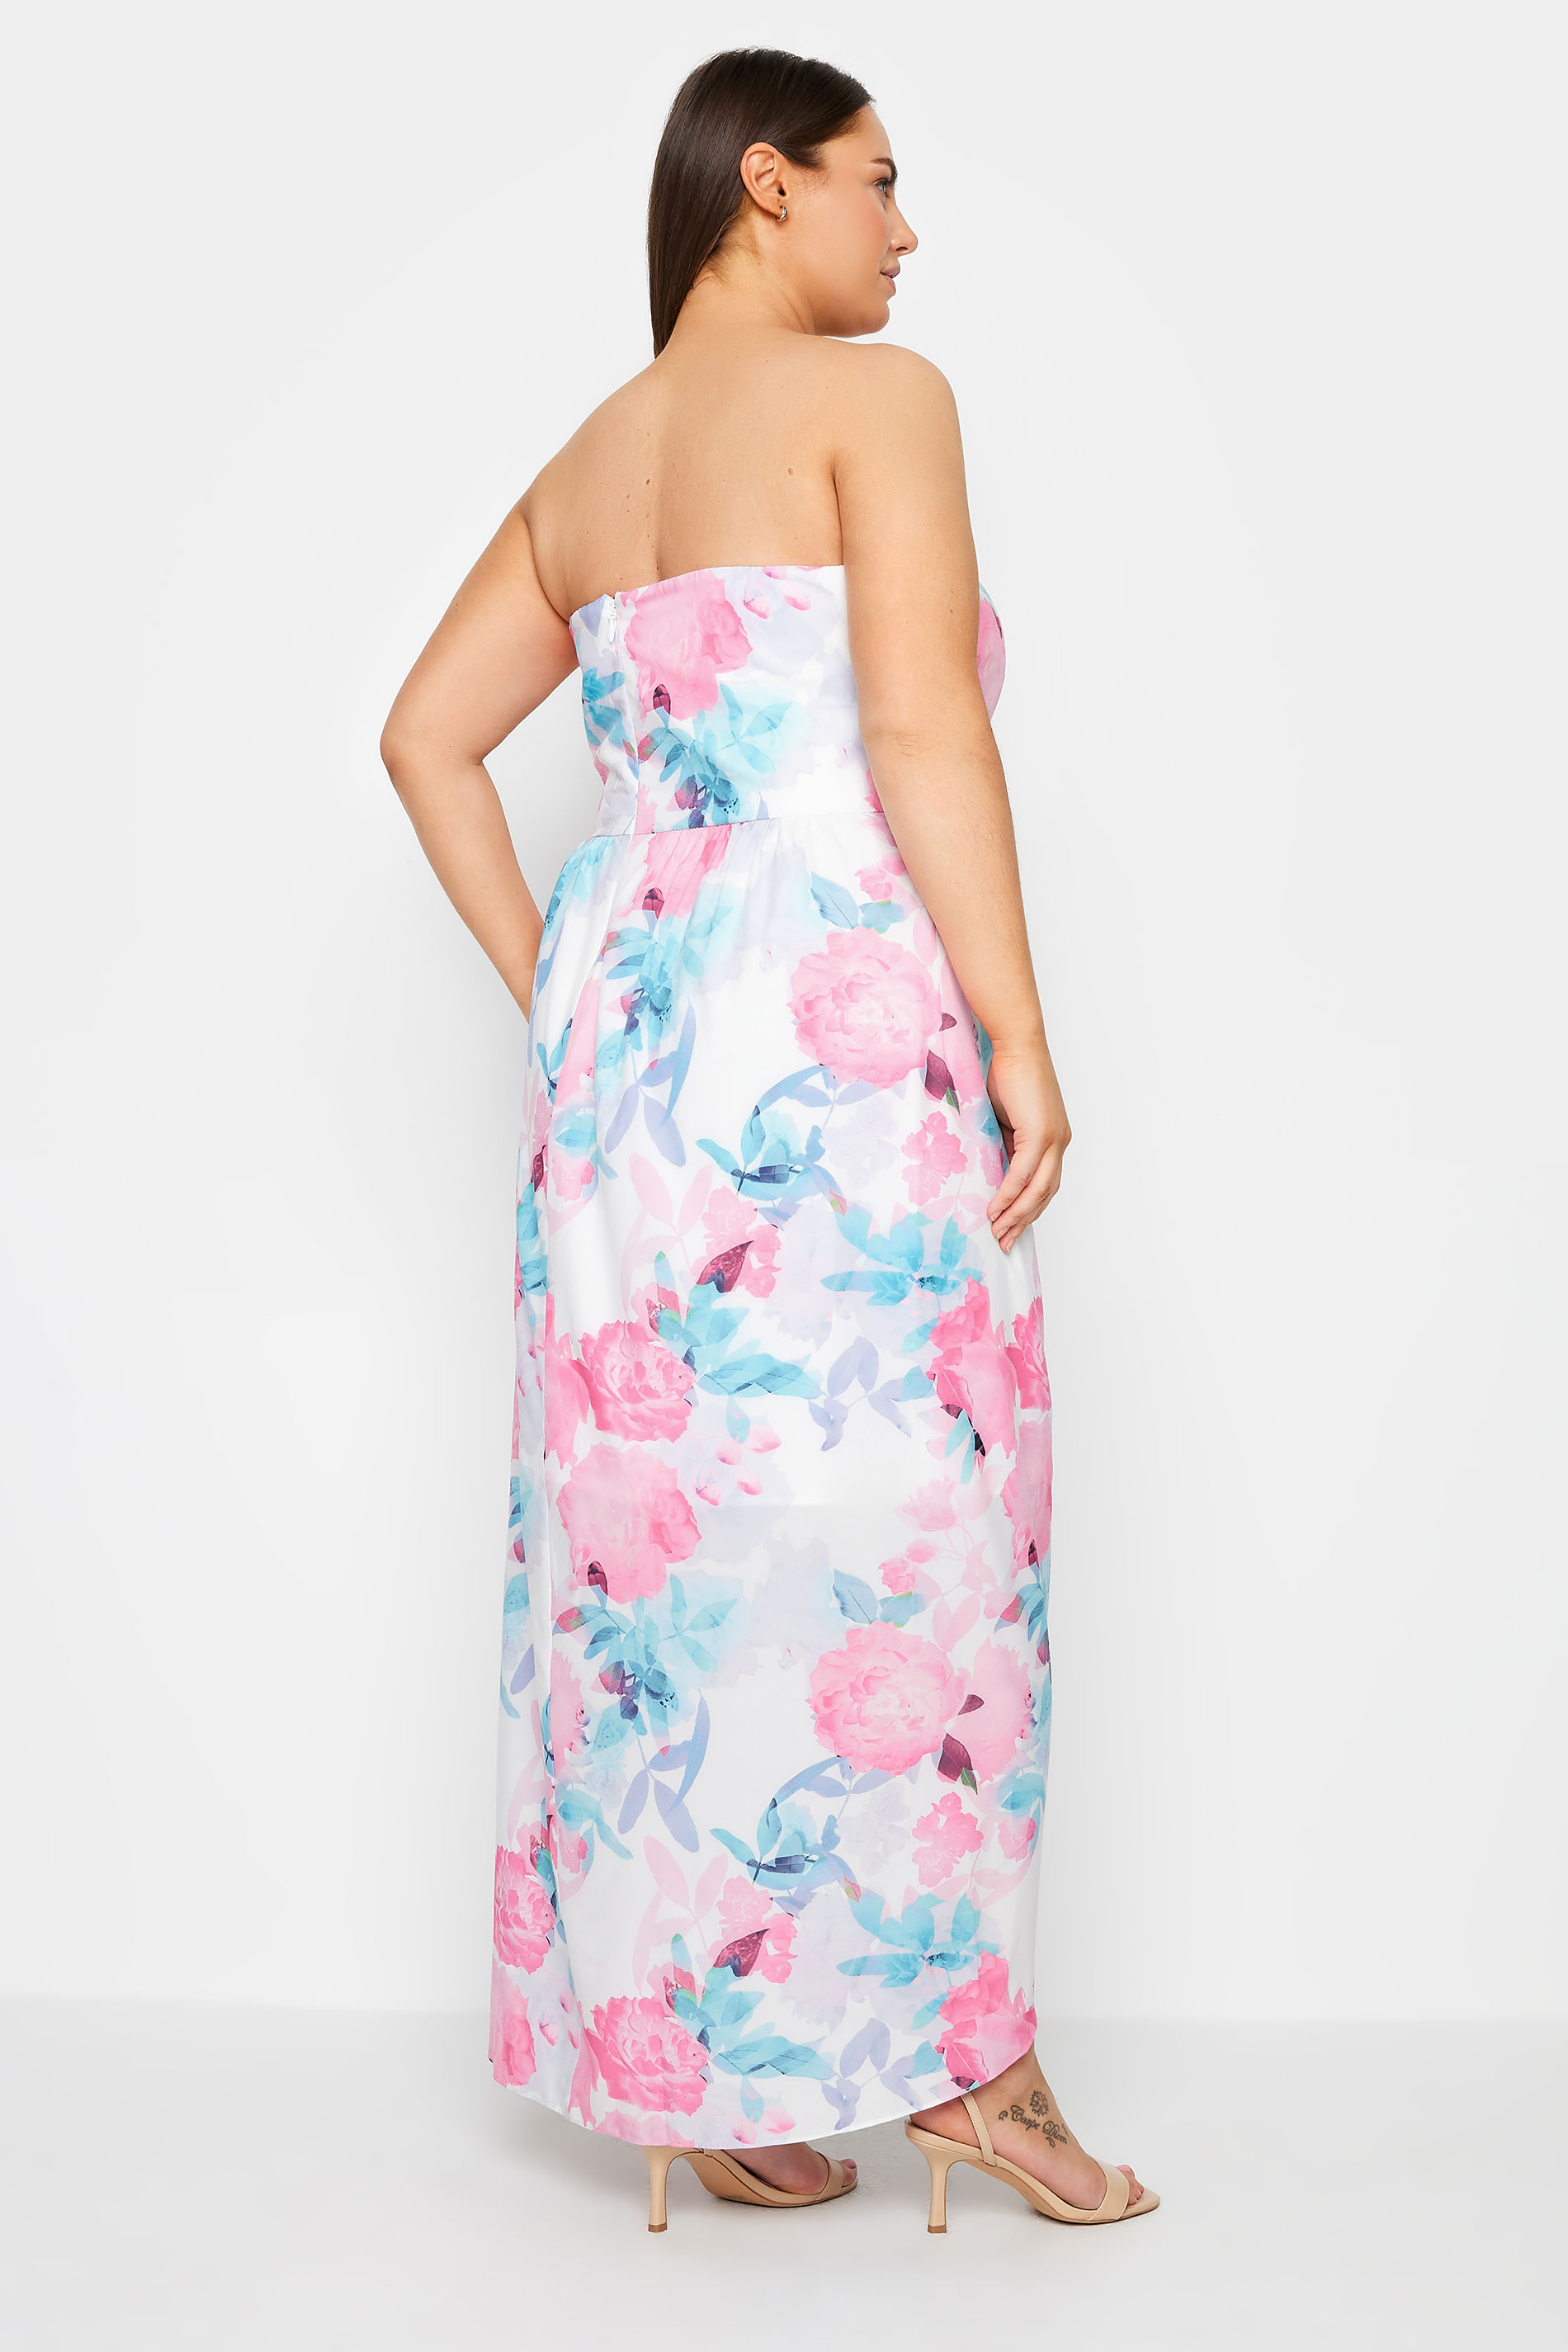 Evans Pink & Blue Strapless Floral Dress 3